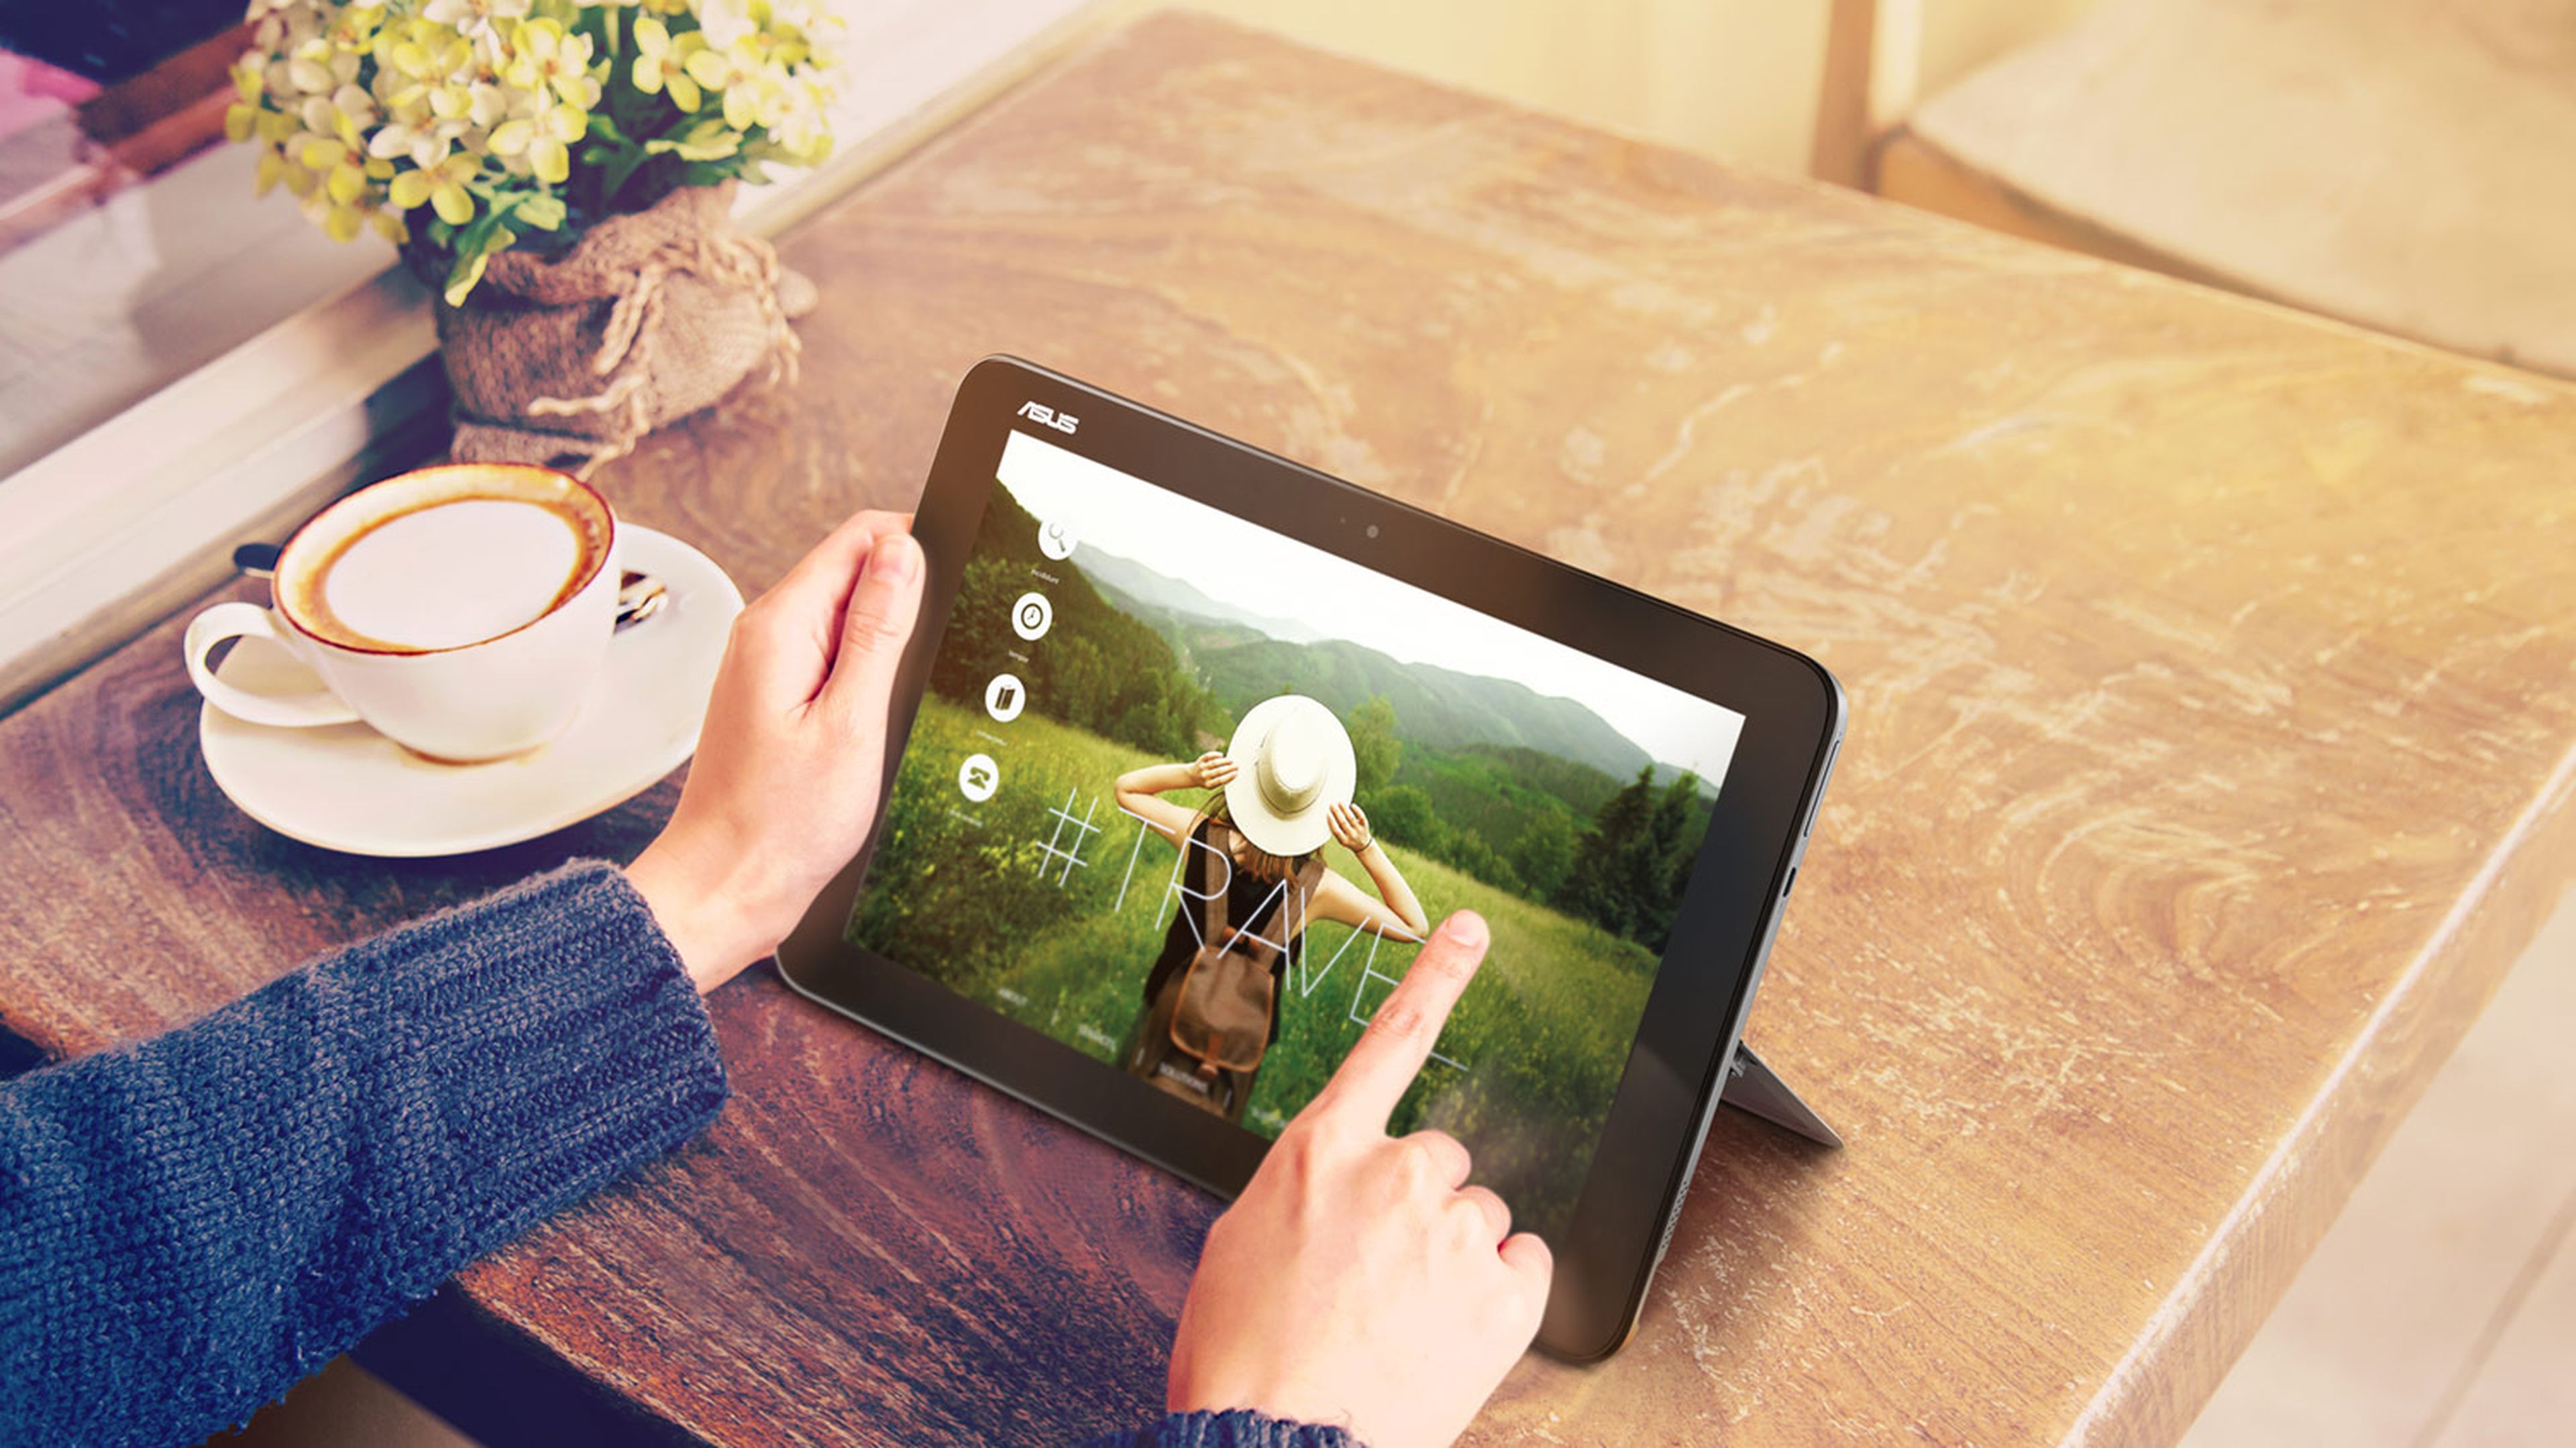 Descubre ScreenPad, la tecnología de Asus que te hará más productivo con tu portátil